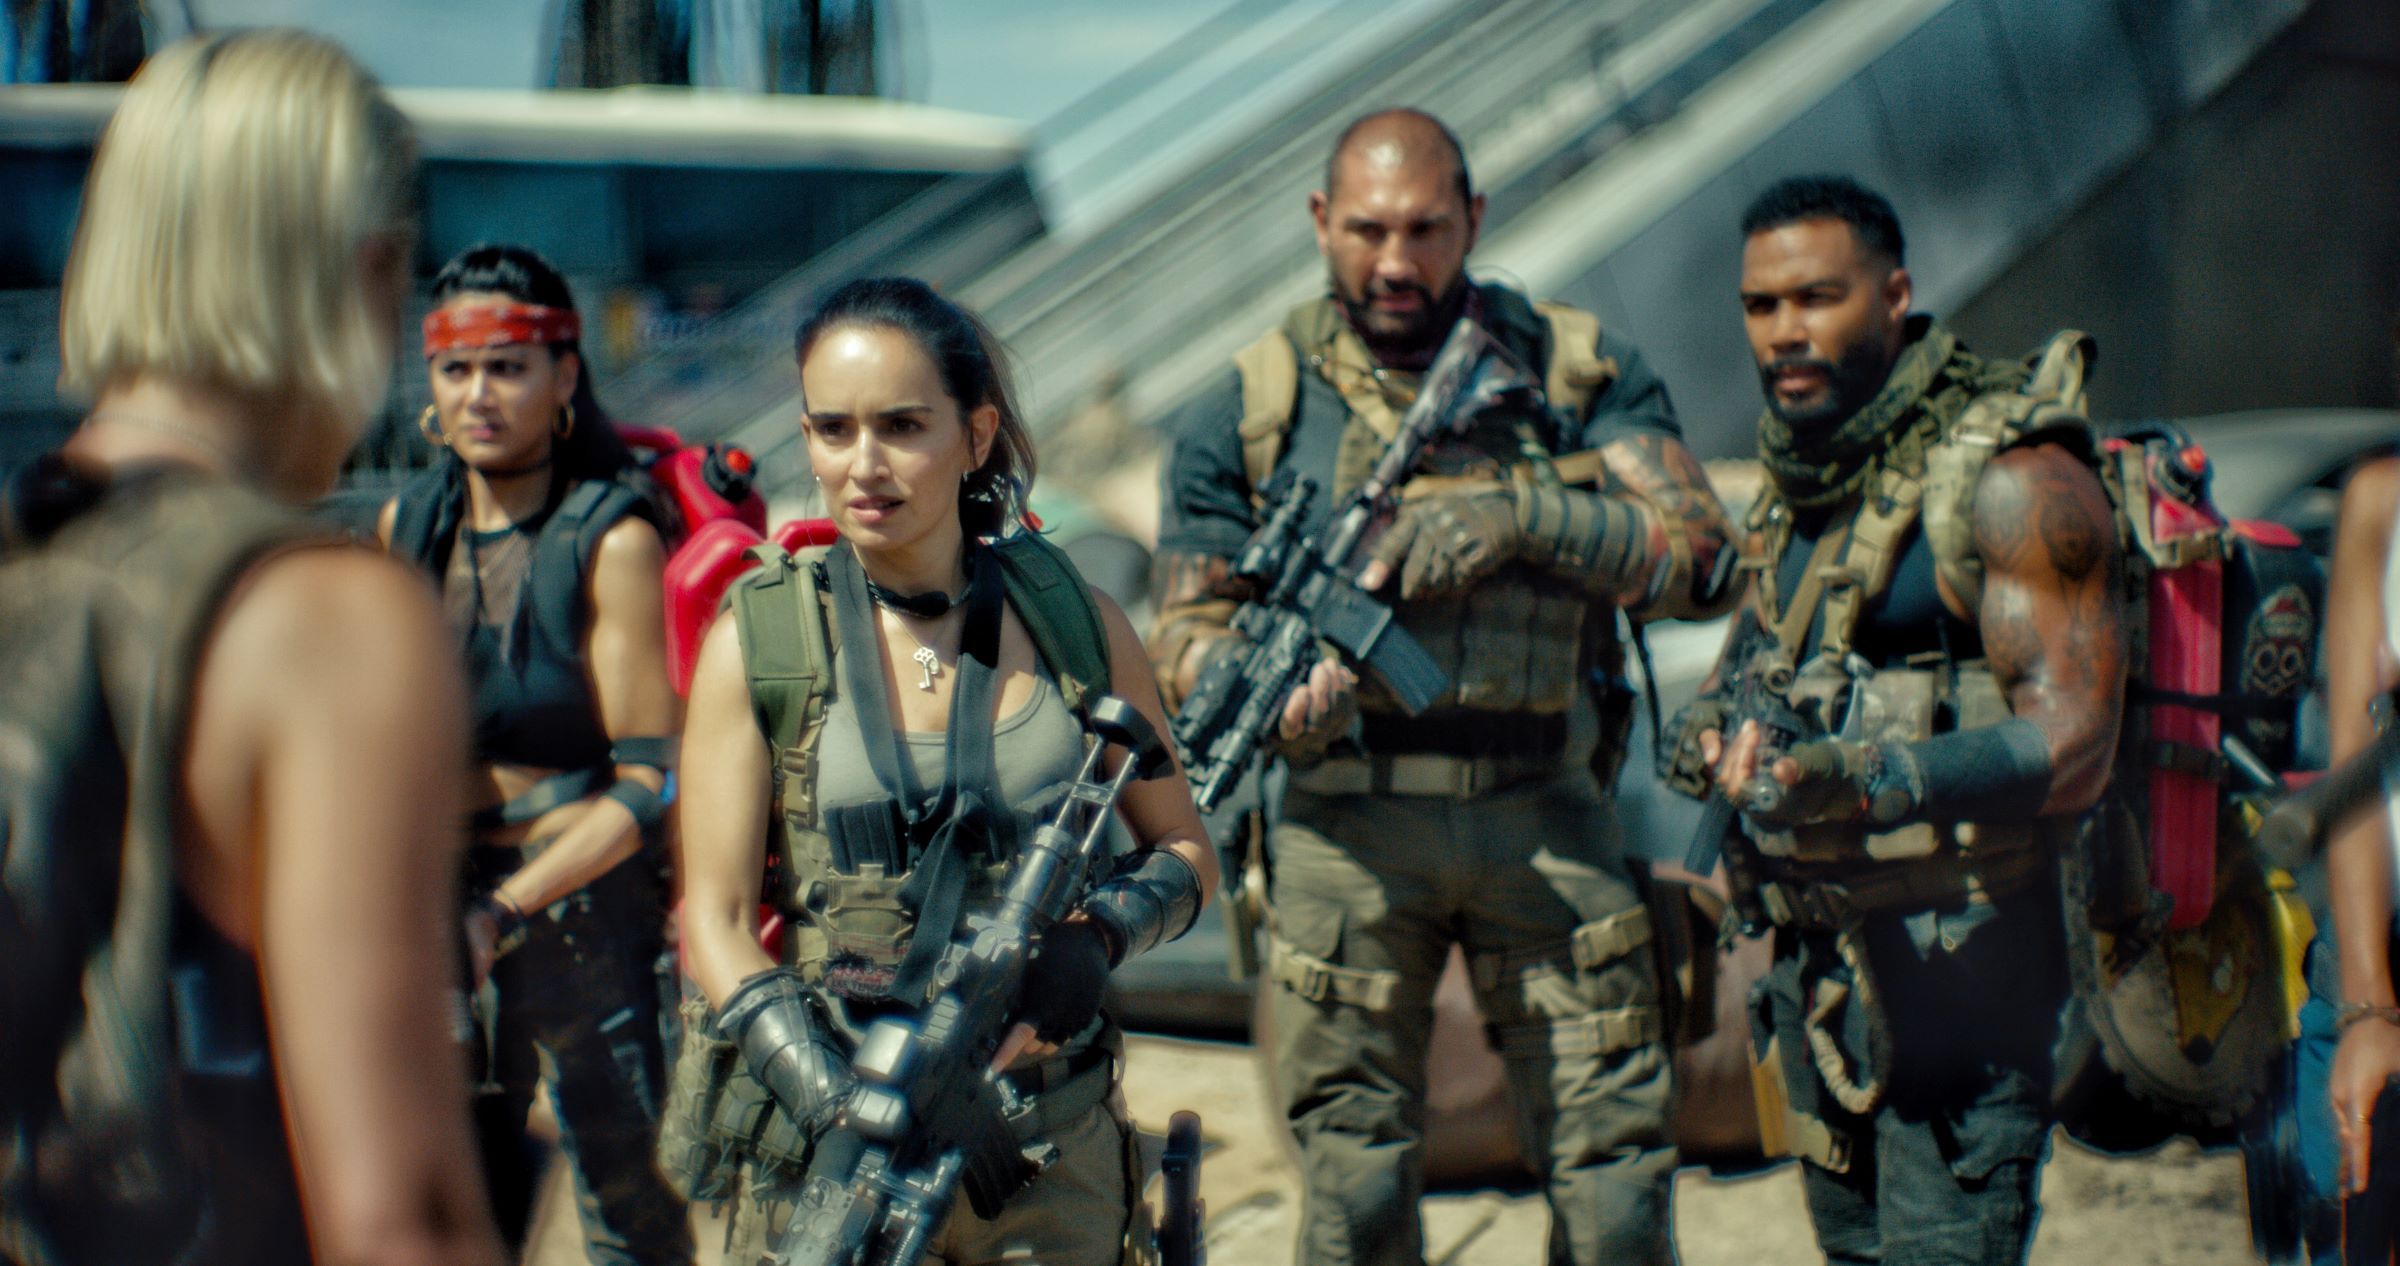 Ejército de los muertos: estreno en Netflix, argumento y tráiler